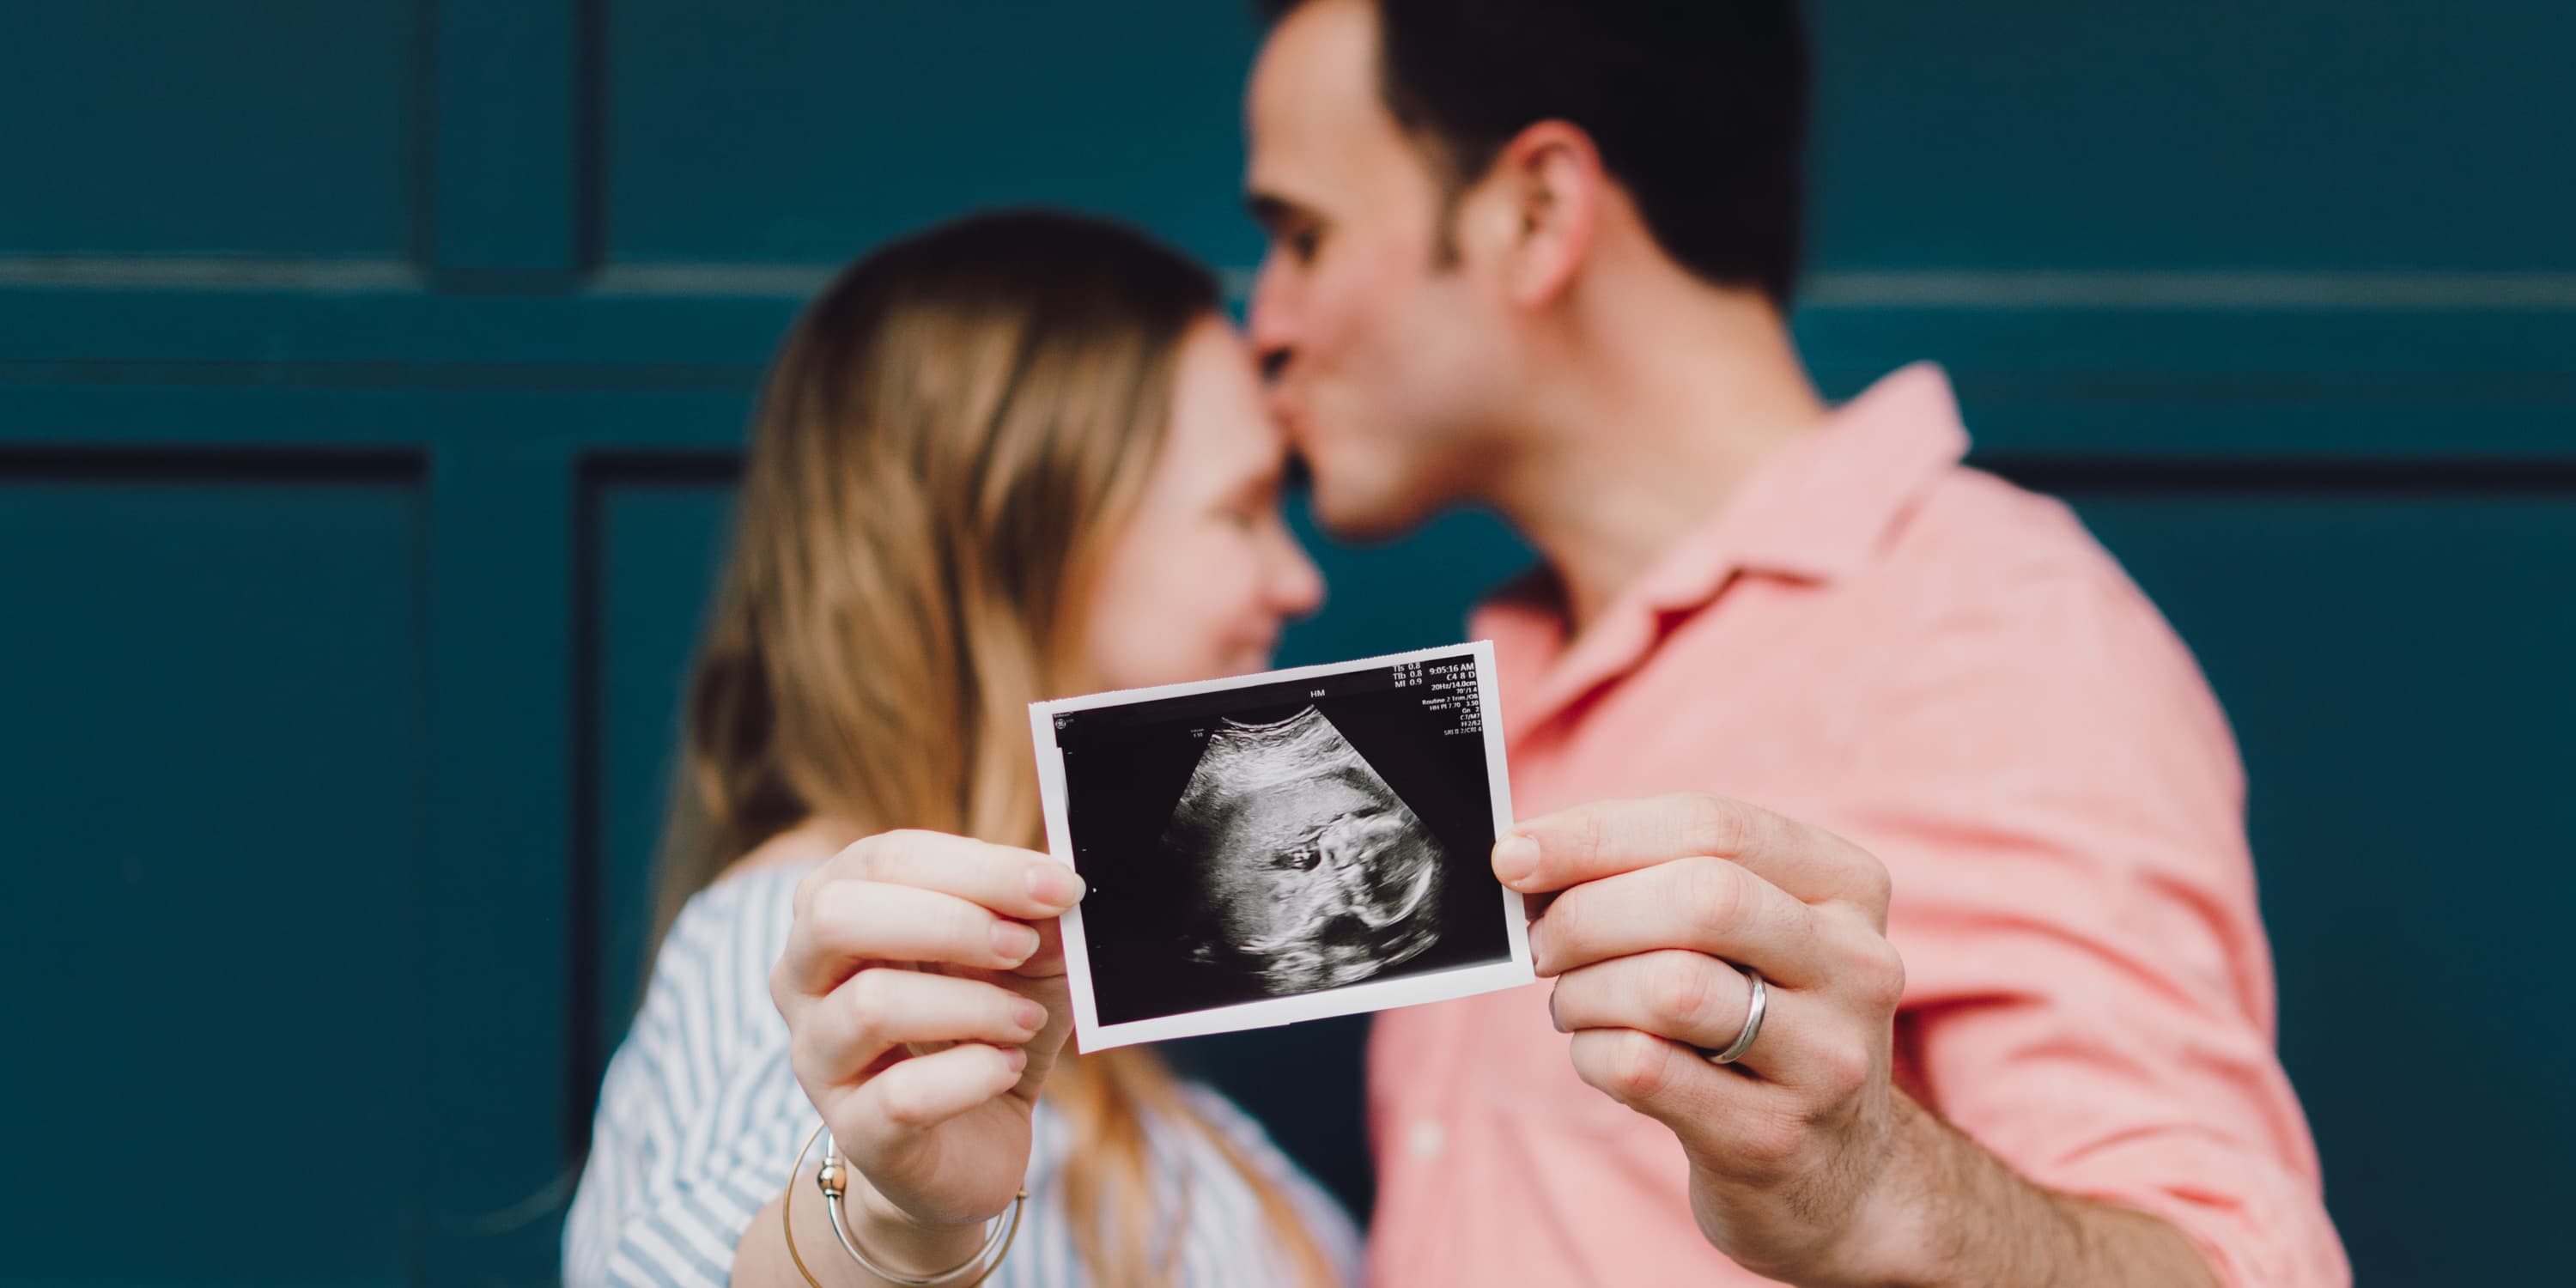 Ungt par håller upp en ultraljudsbild på bebis framför kameran.